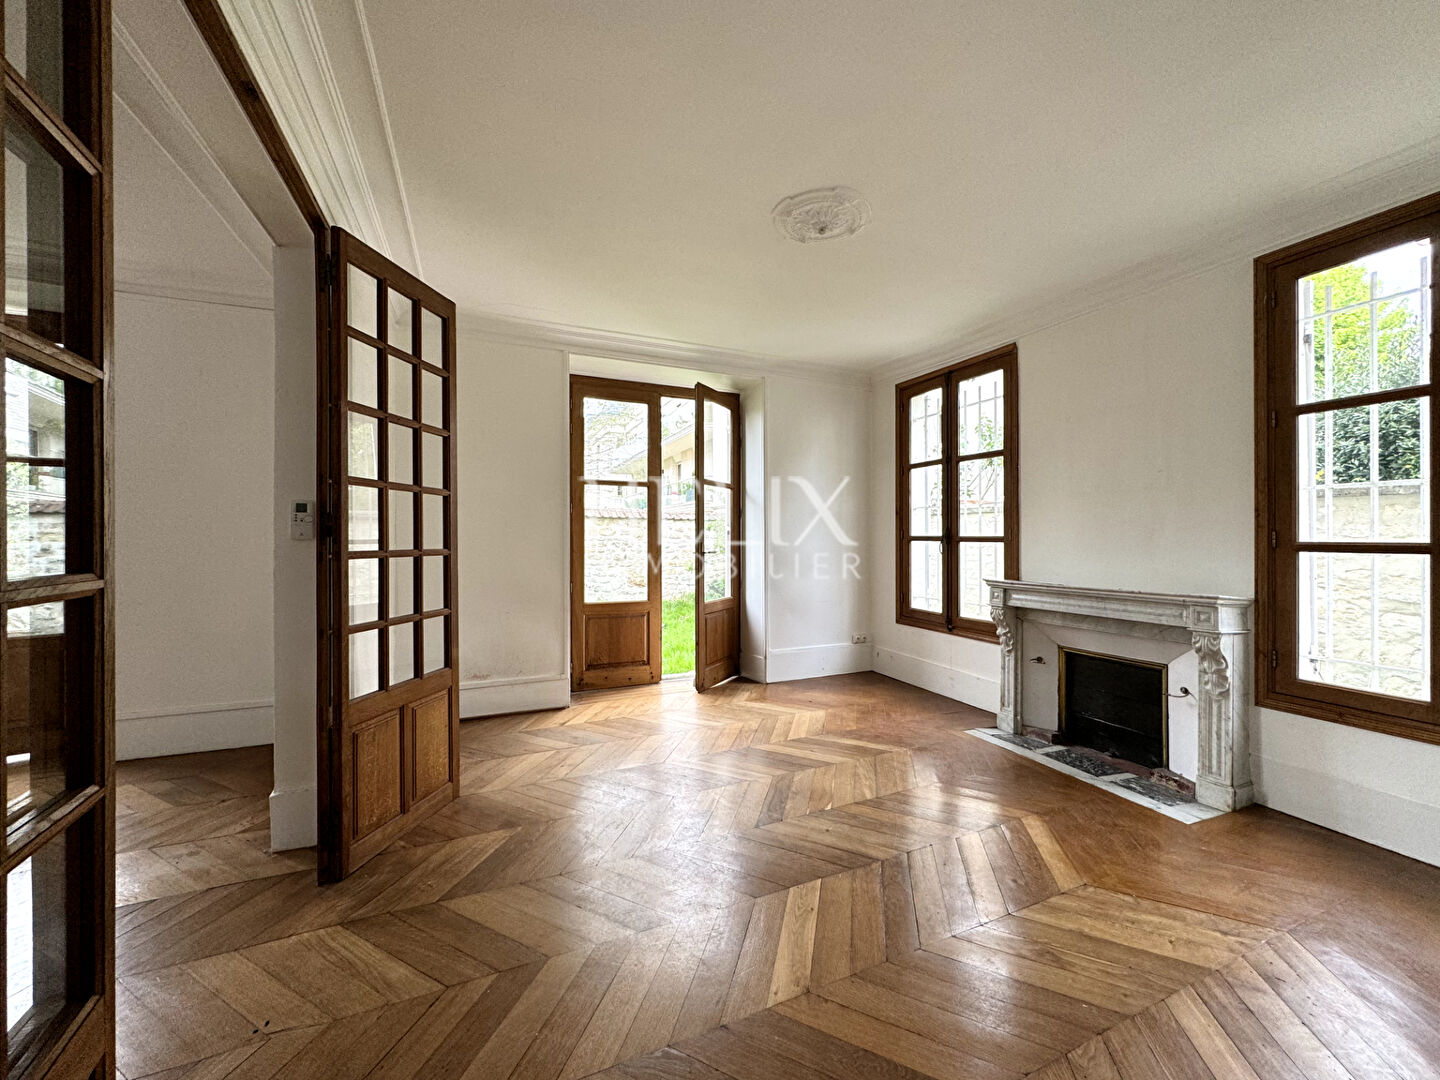 A vendre à Saint Germain en Laye, dans un secteur privilégié un appartement de 105,23 M² ouvrant sur un jardin privatif de 133 M², 5 minutes du RER A.